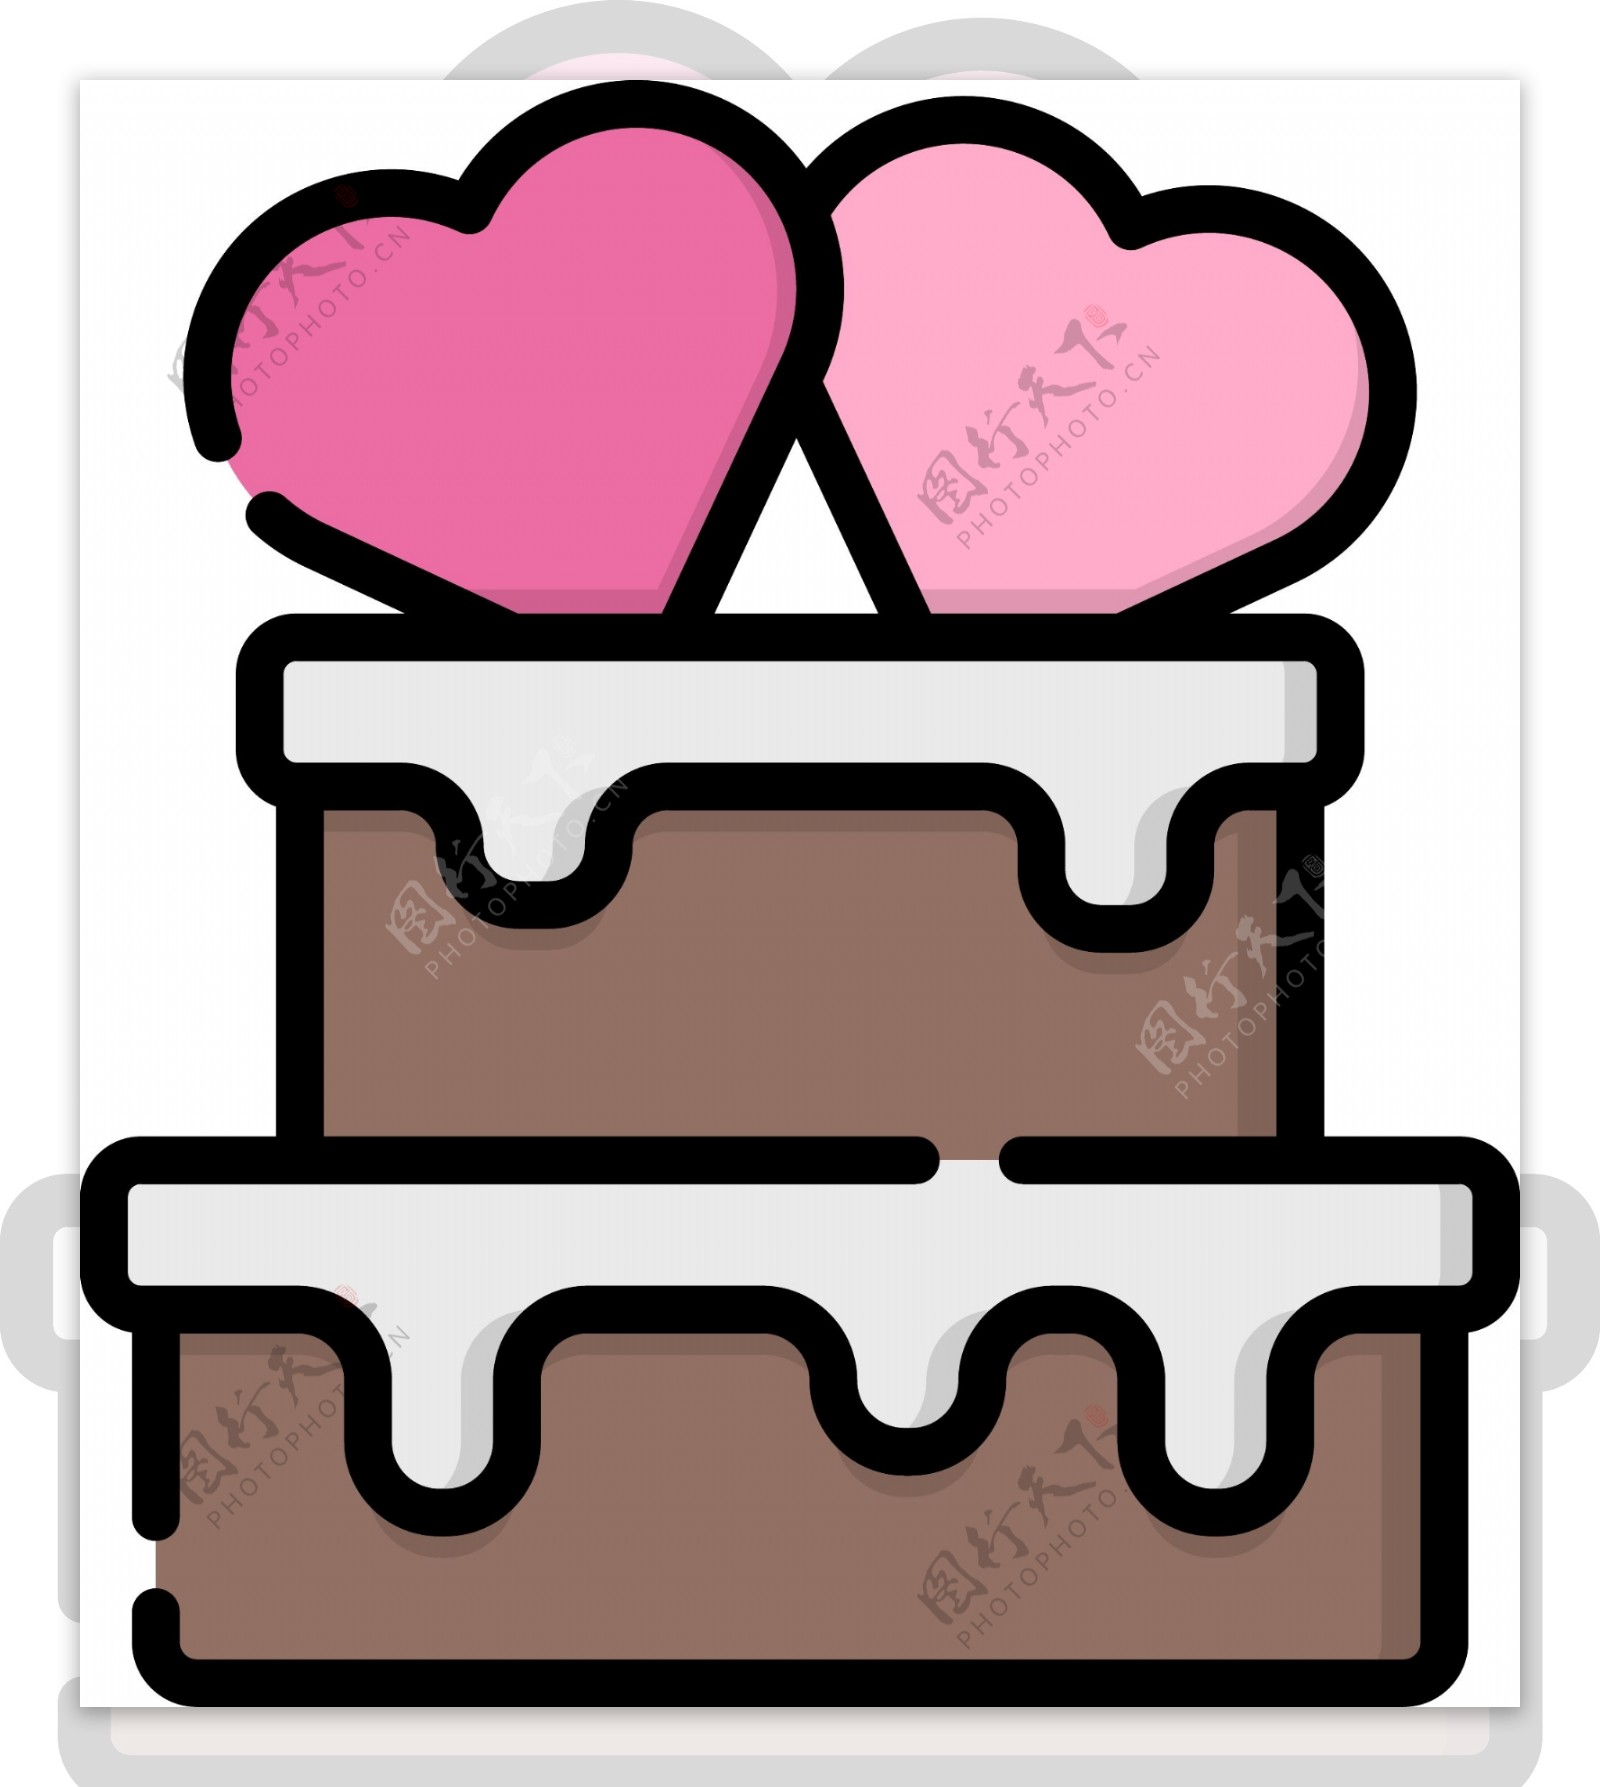 美味甜品甜食生日蛋糕mbe风格插画